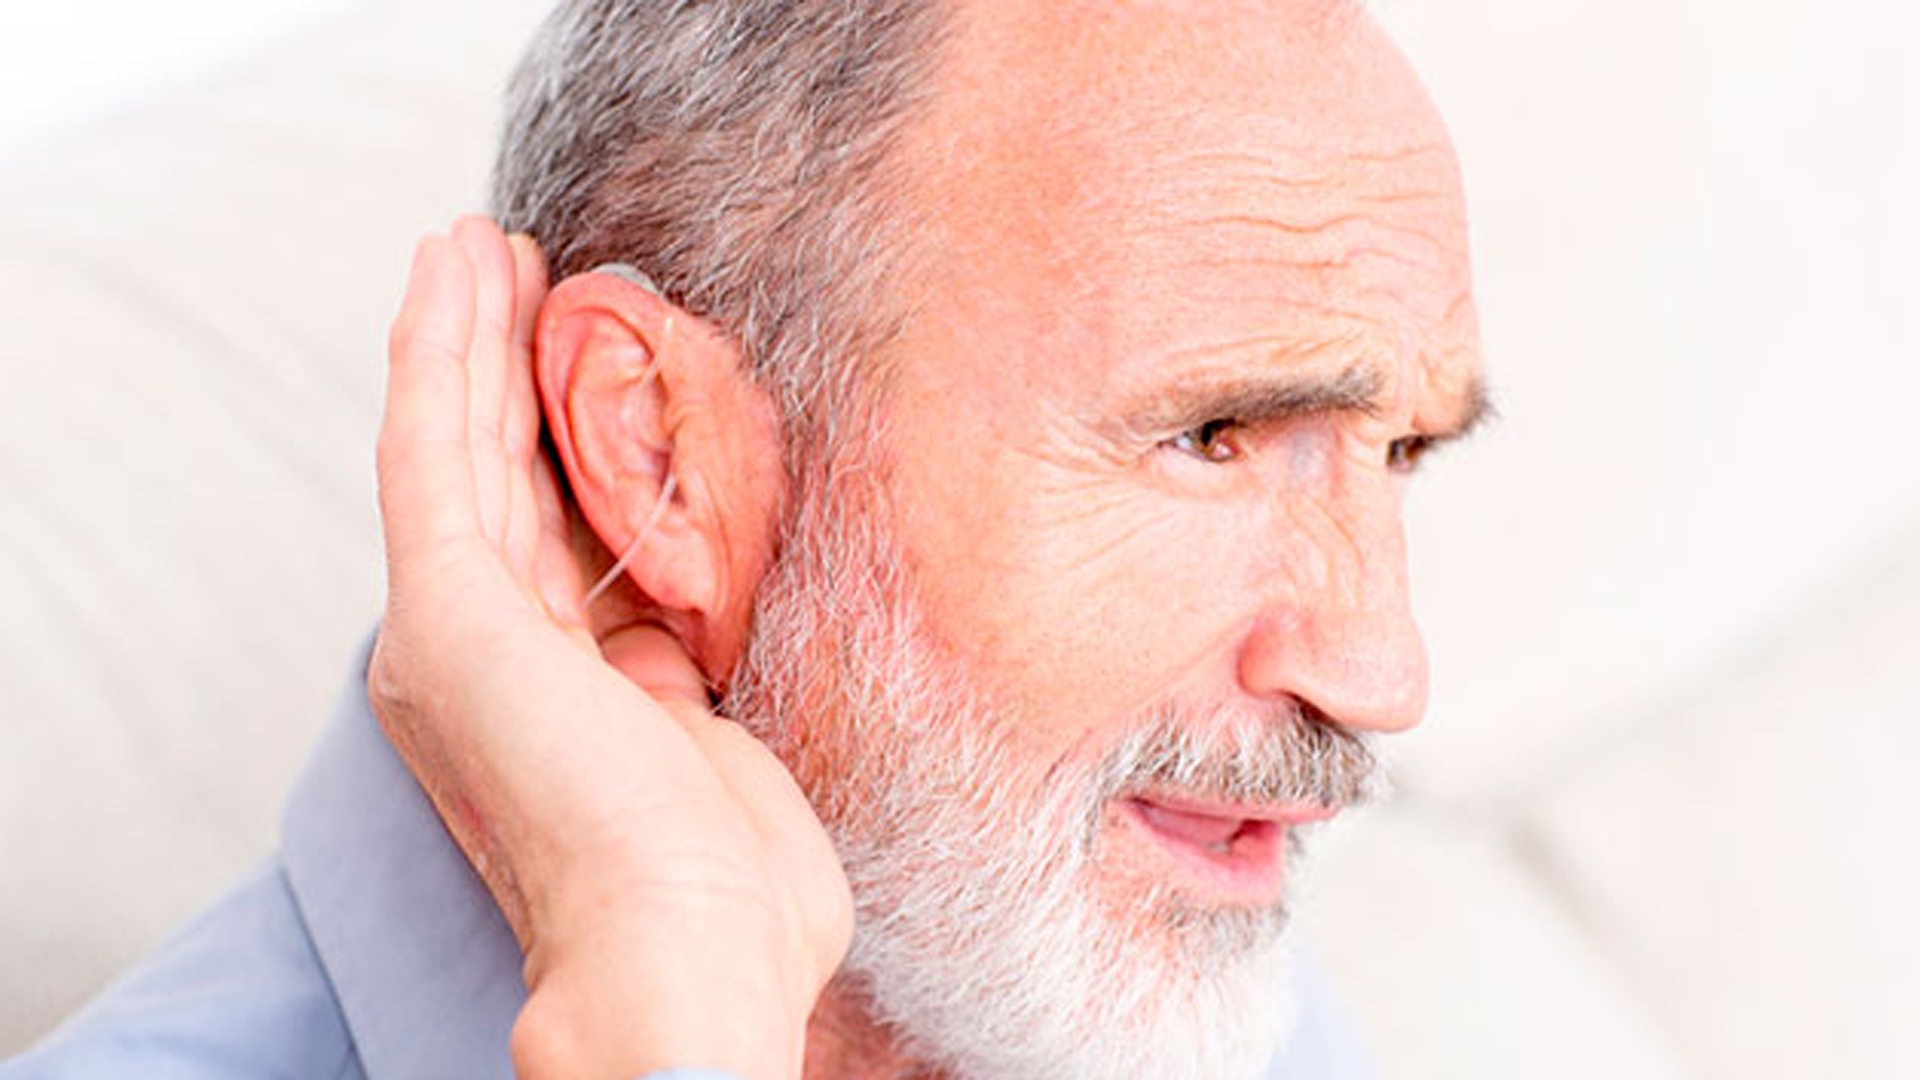 Los umbrales de audición tienden a deteriorarse gradualmente con la edad y la pérdida de la audición suele ser más pronunciado en las frecuencias más altas (iStock)